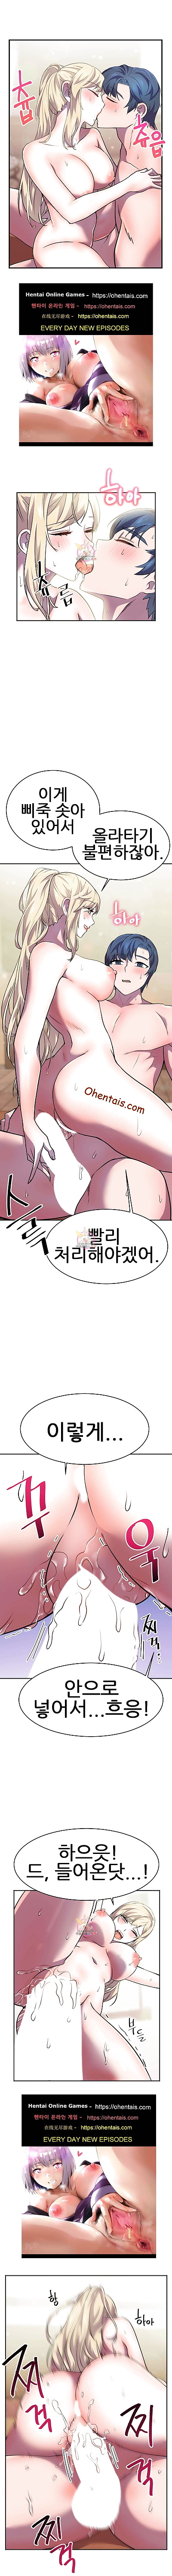 korean manga ížˆì–´ë¡œ.., big breasts , blowjob 